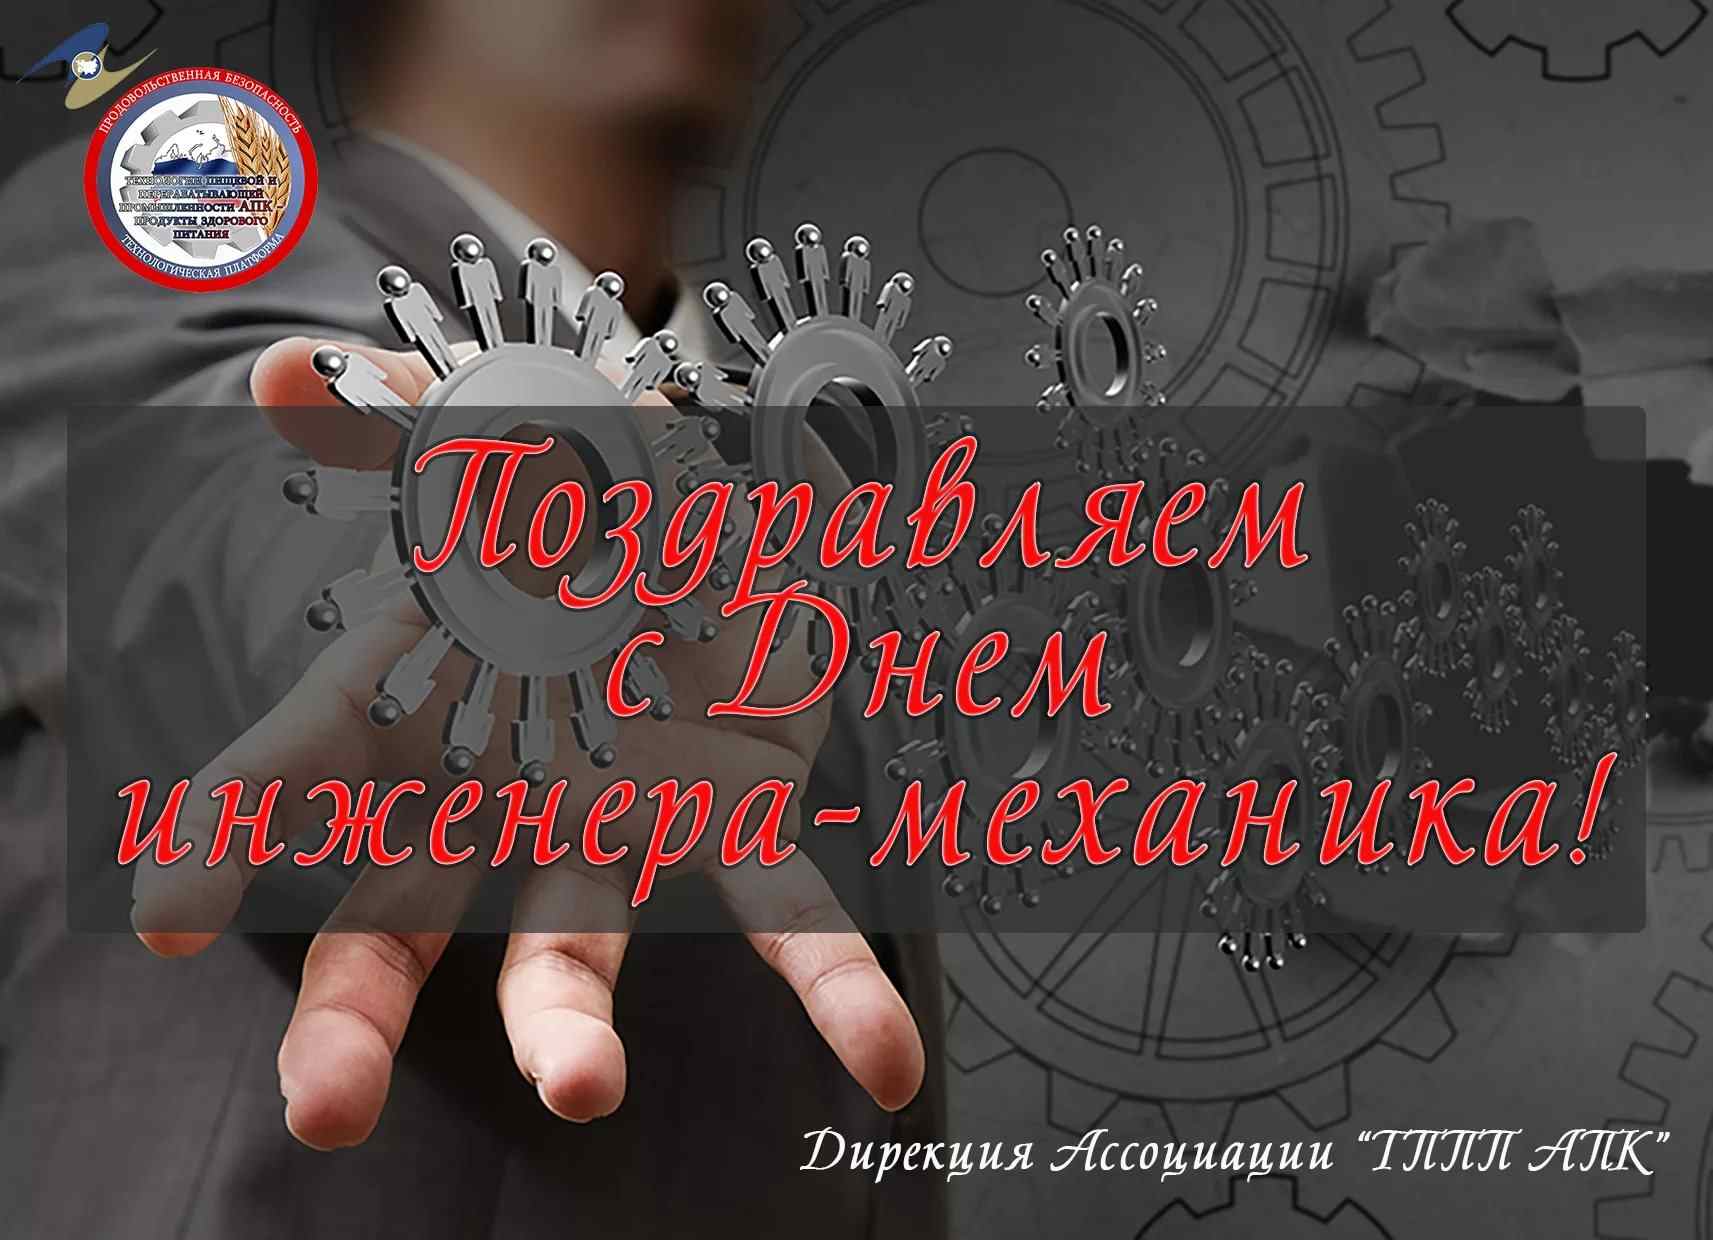 Открытка на день инженера механика в России 30 октября 2021 года (21)